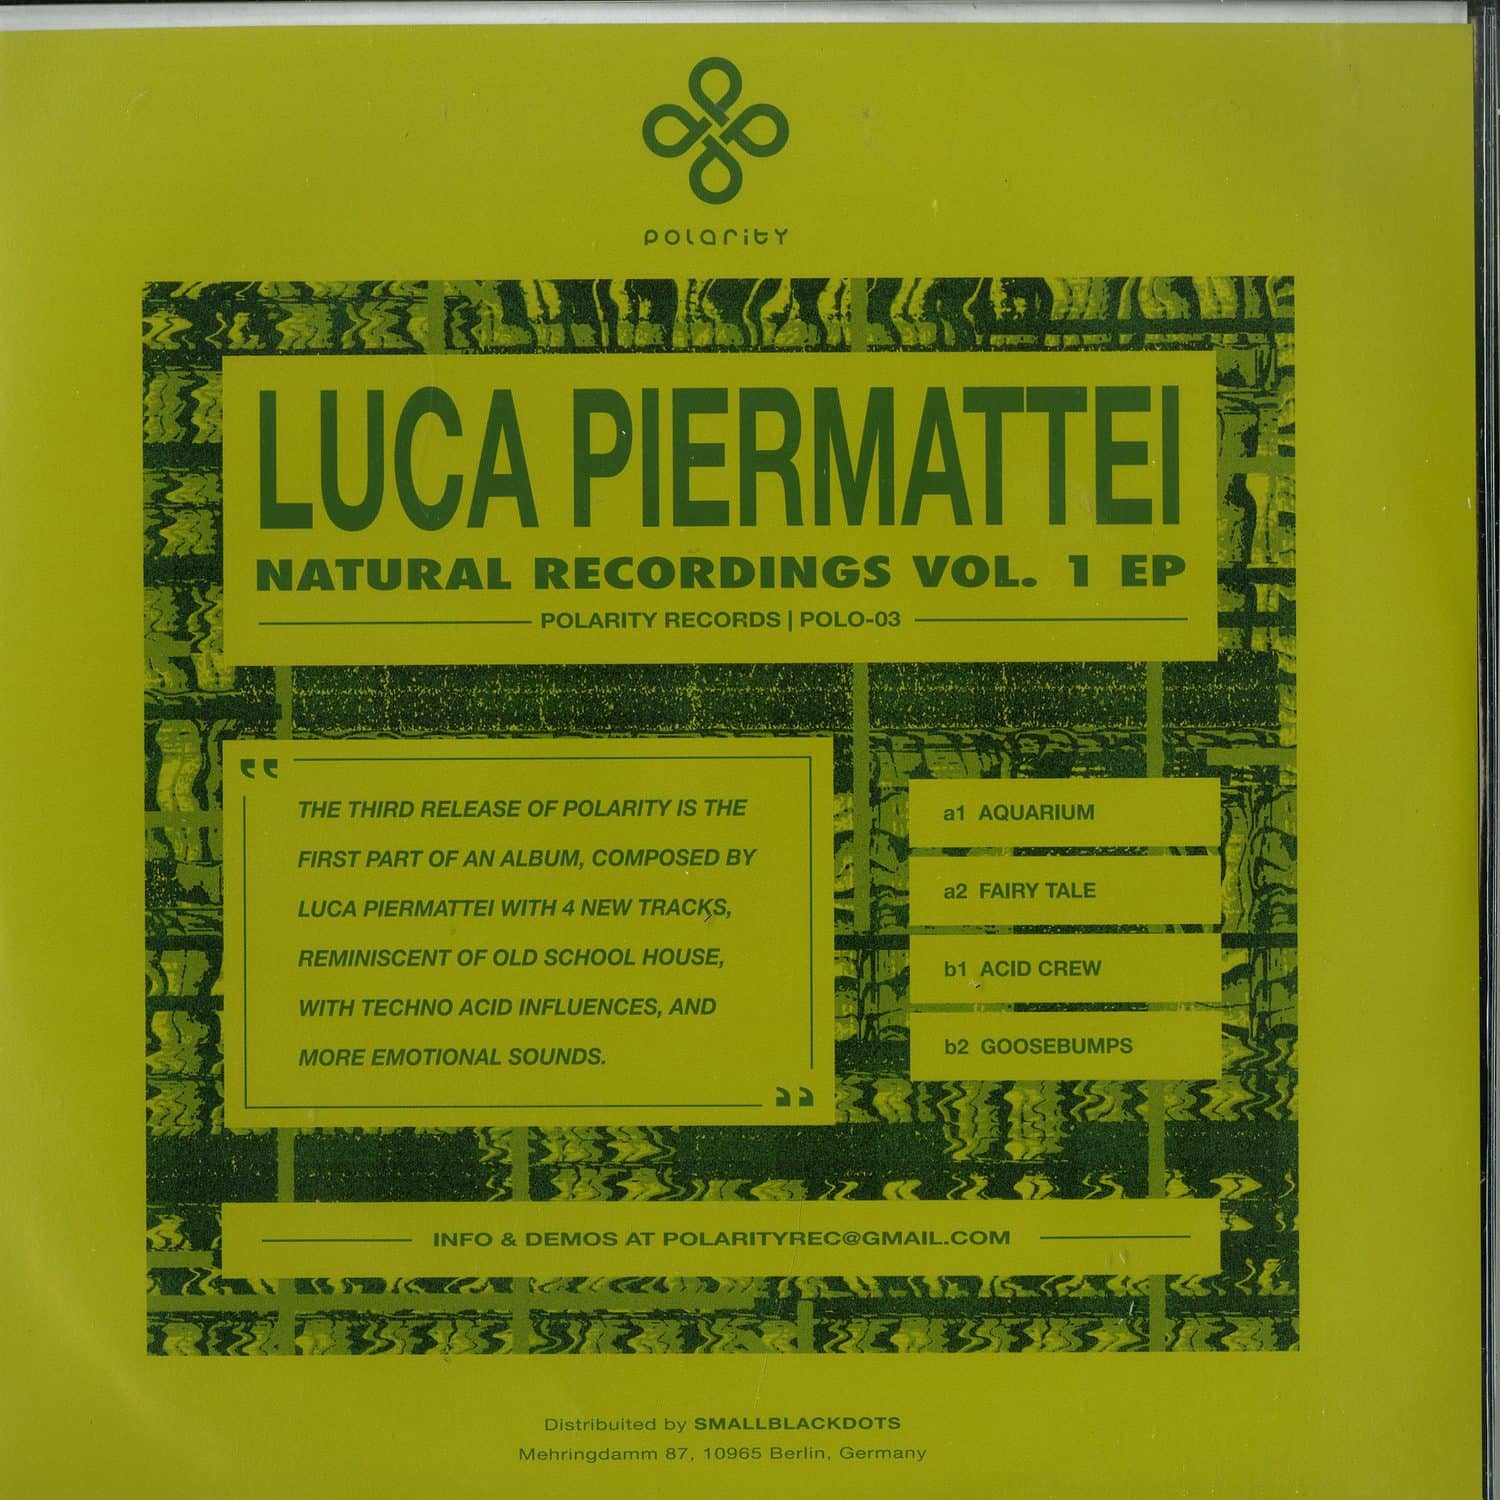 Luca Piermattei - NATURAL RECORDINGS VOL. 1 EP